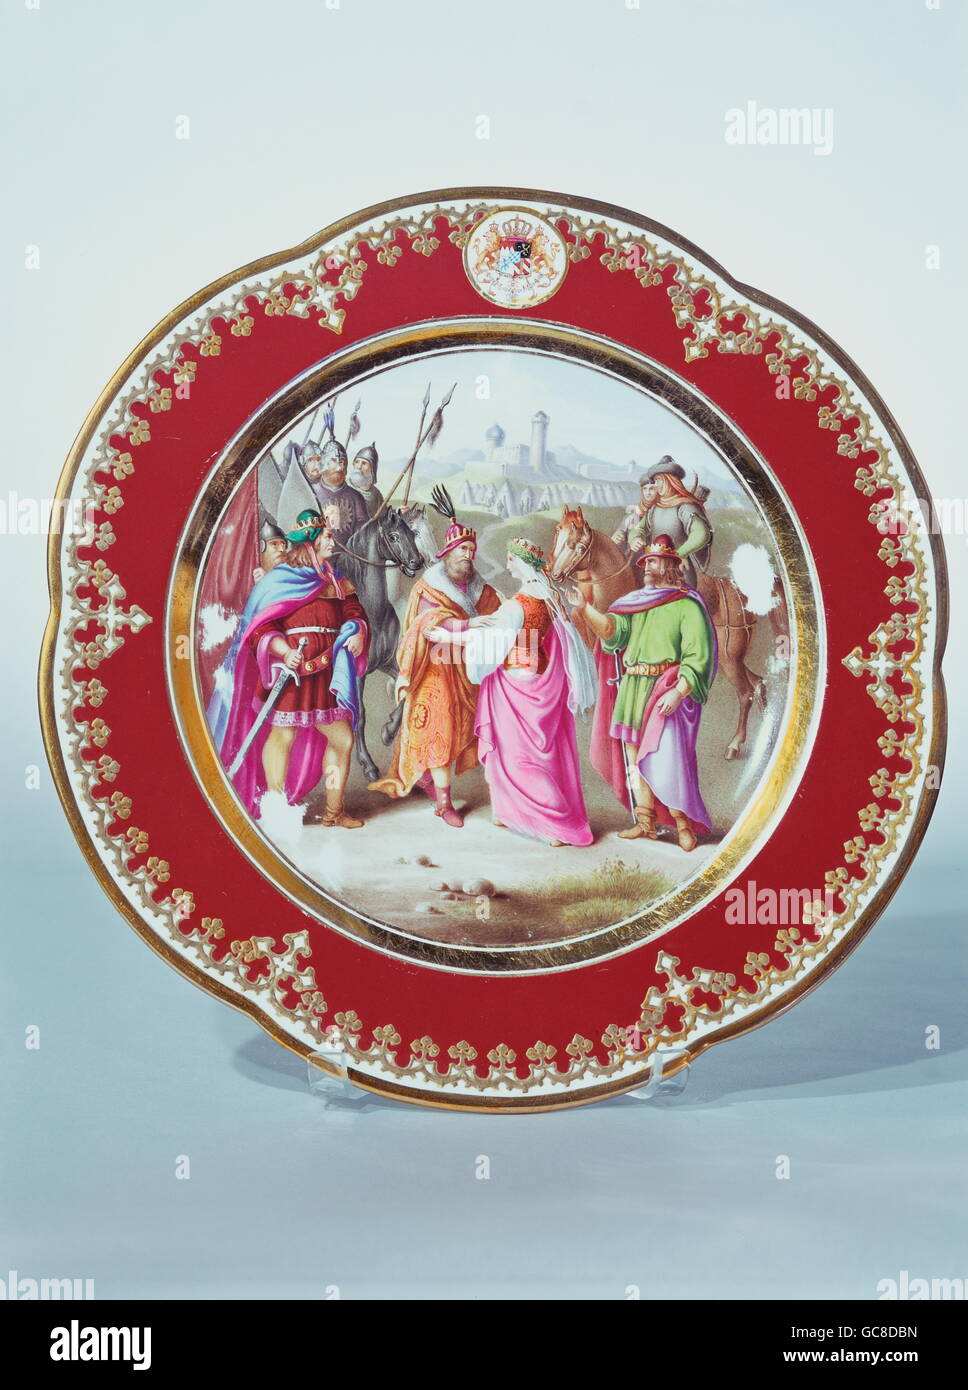 fine arts, porcelain, plate, painted, Nibelung legend 'King Attila receiving Kriemhield', copied by Ferdinand le Feubure, diameter 23,5 cm, Munich, 1842, Stock Photo